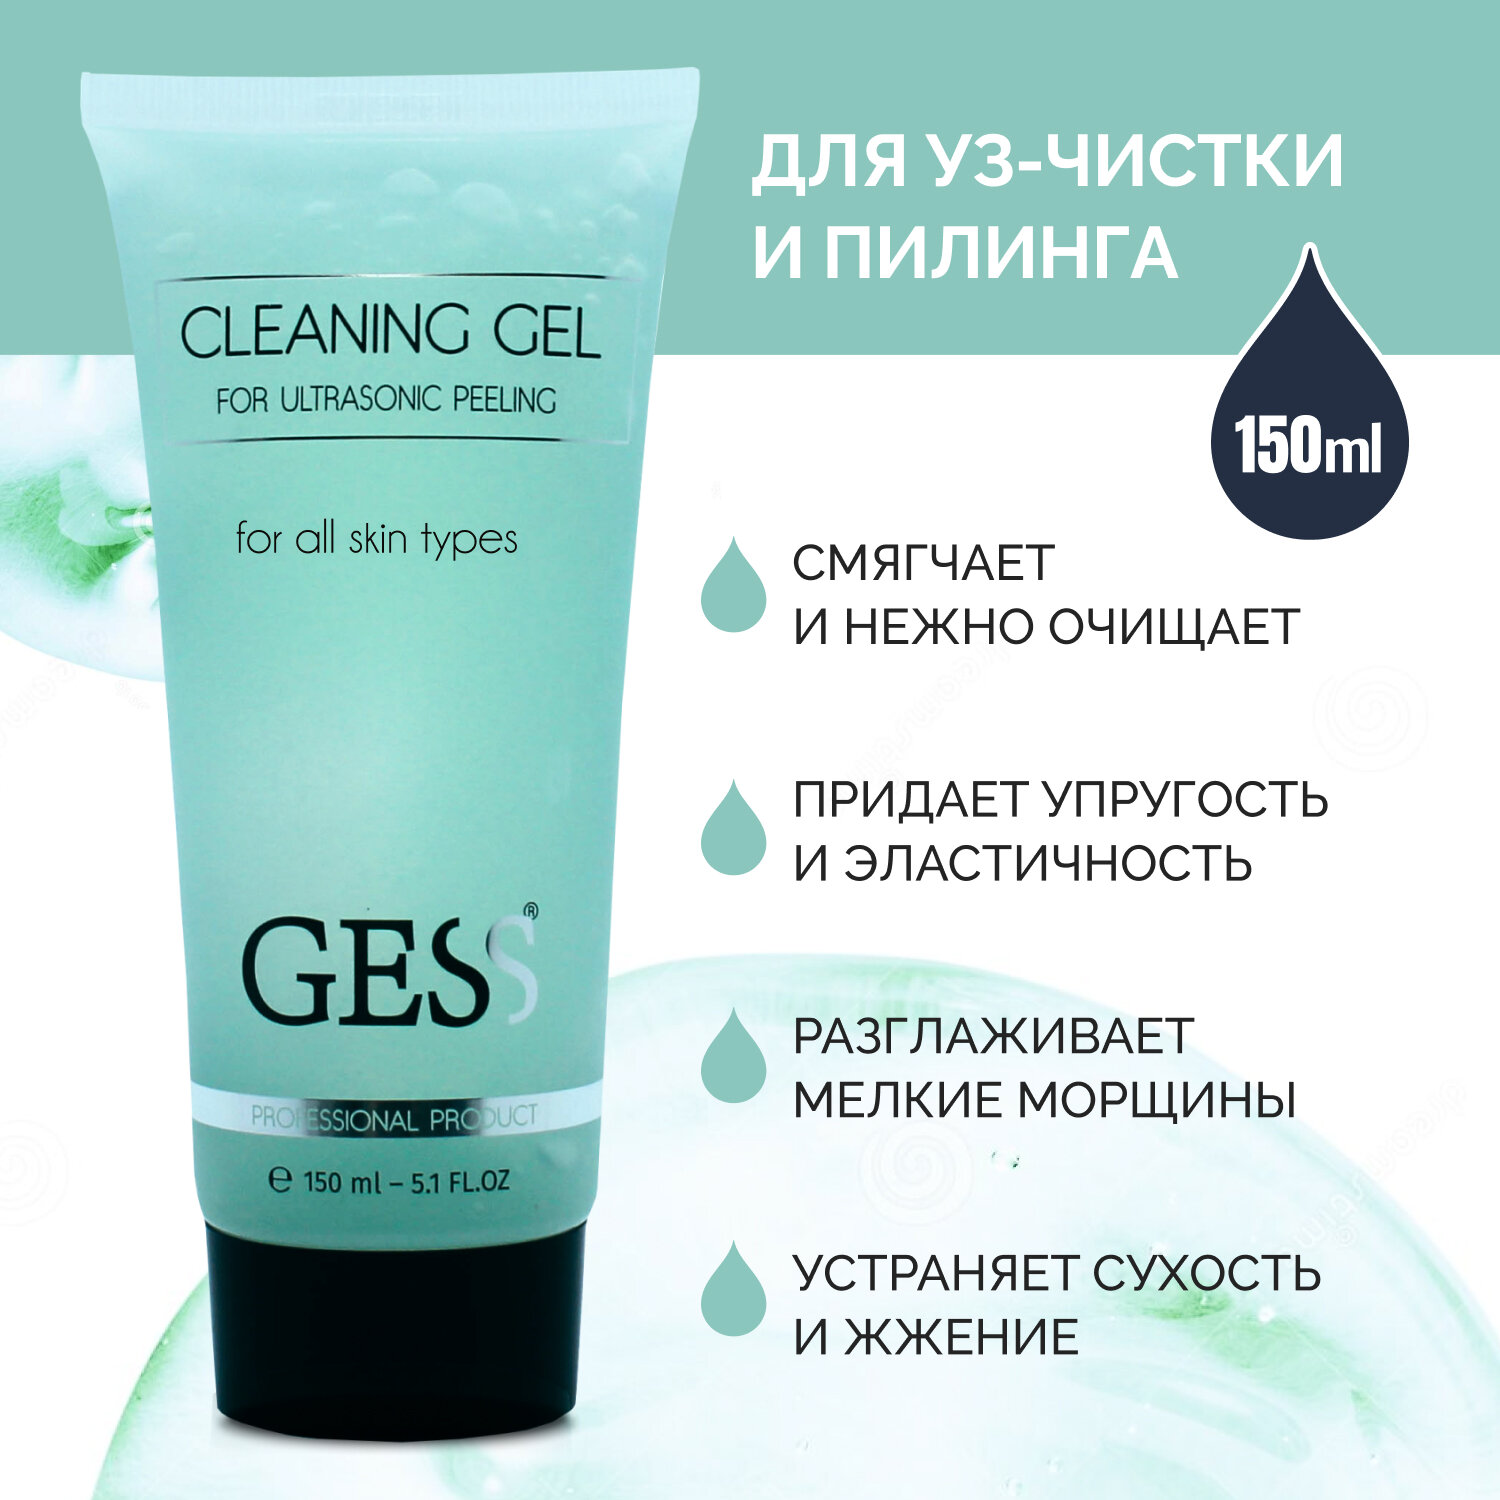 Гель для ультразвуковой чистки лица GESS Cleaning Gel для всех типов кожи, очищающий гель